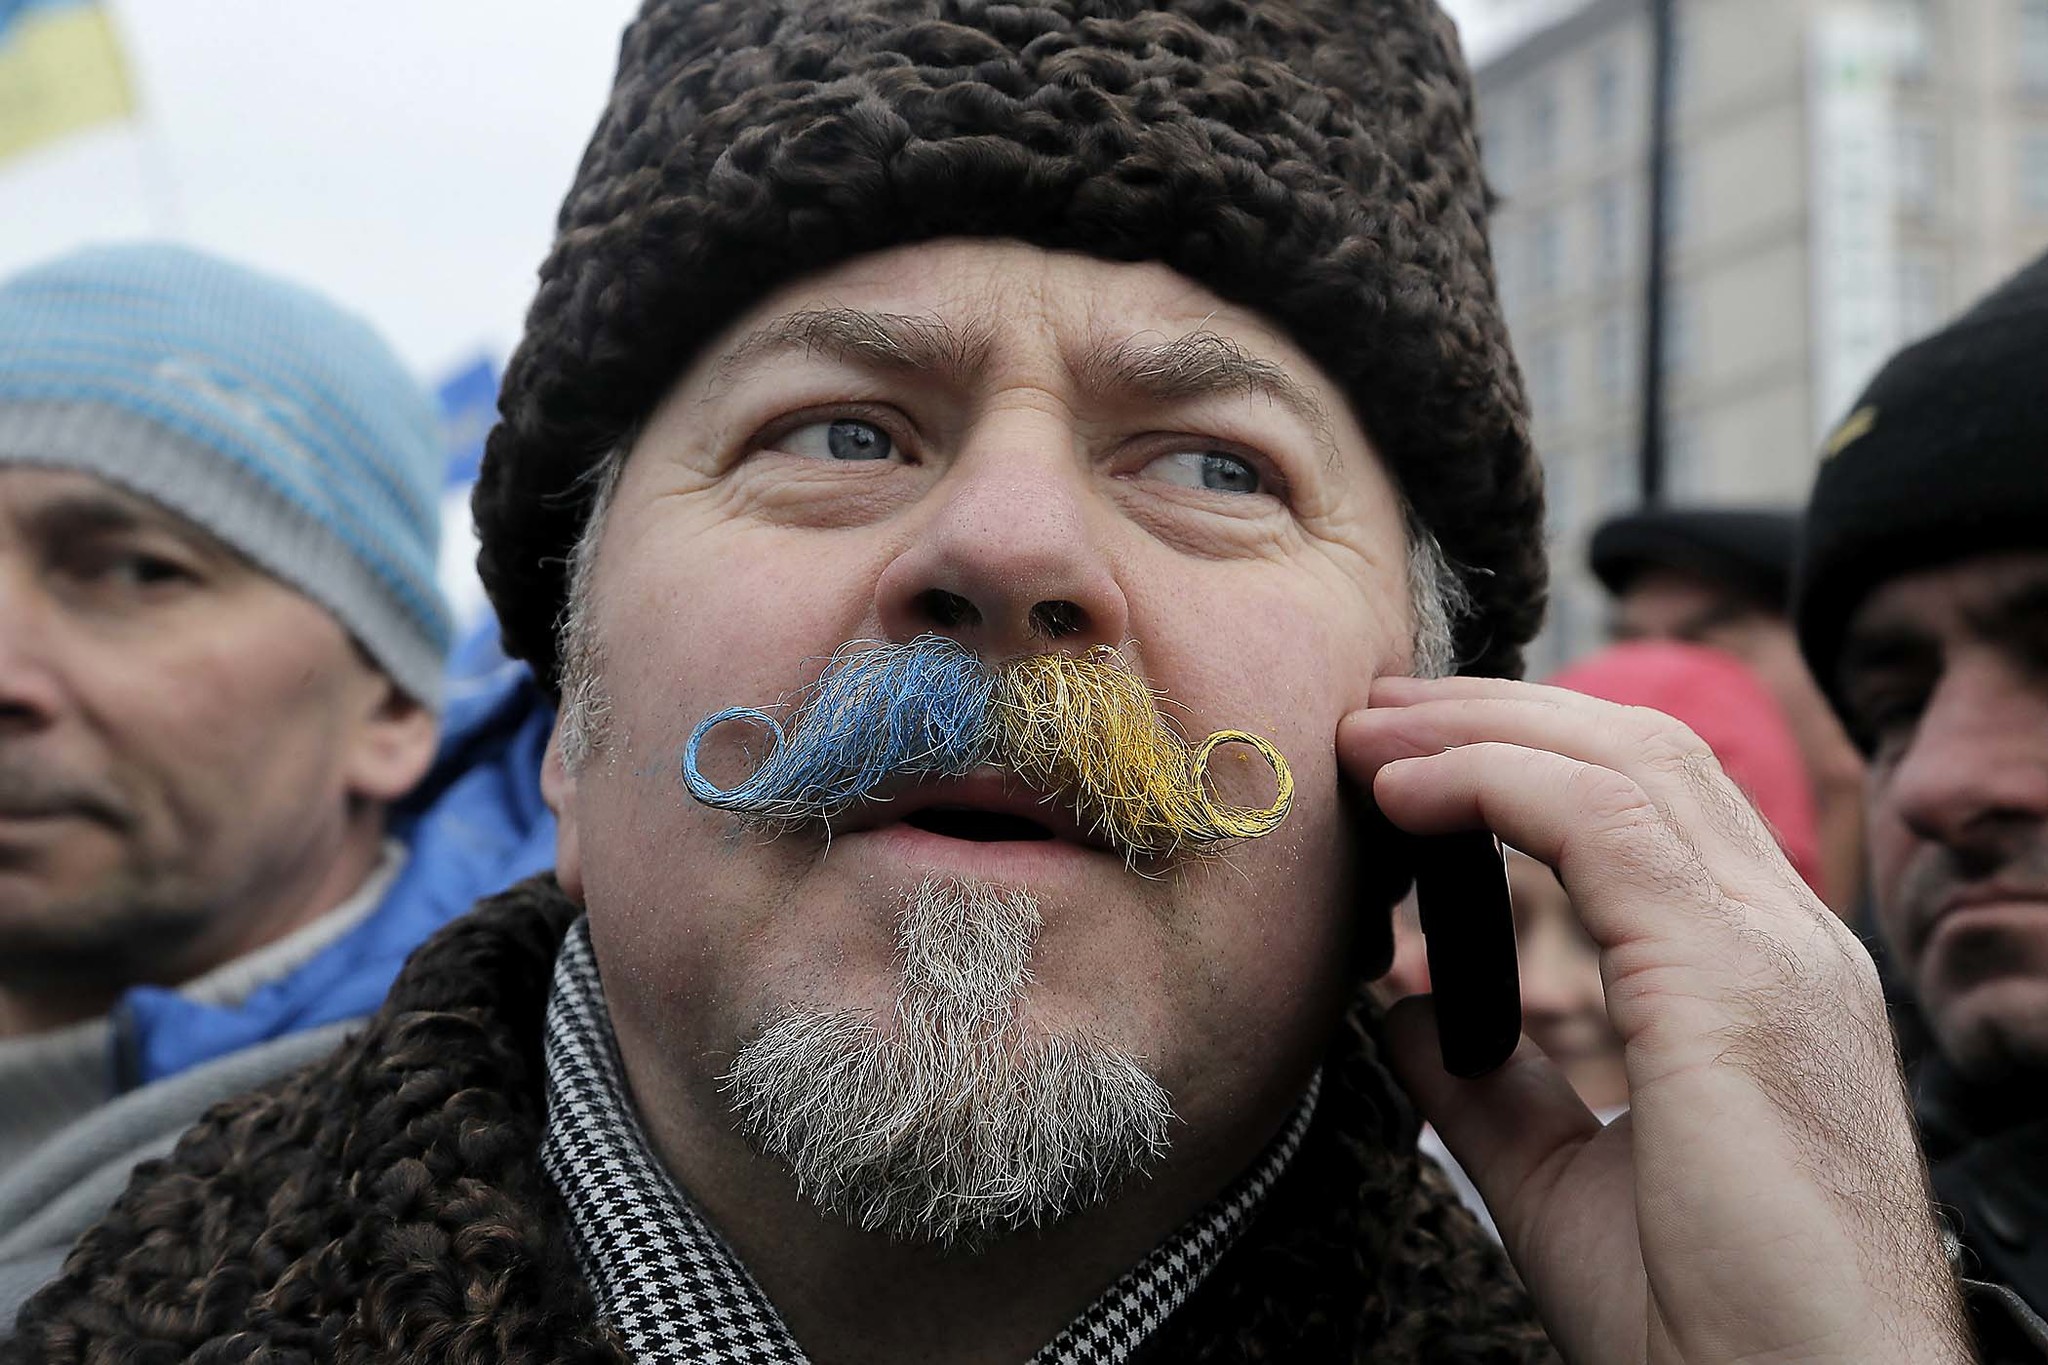 Биография украинца. Лицо украинца. Украинские усы.